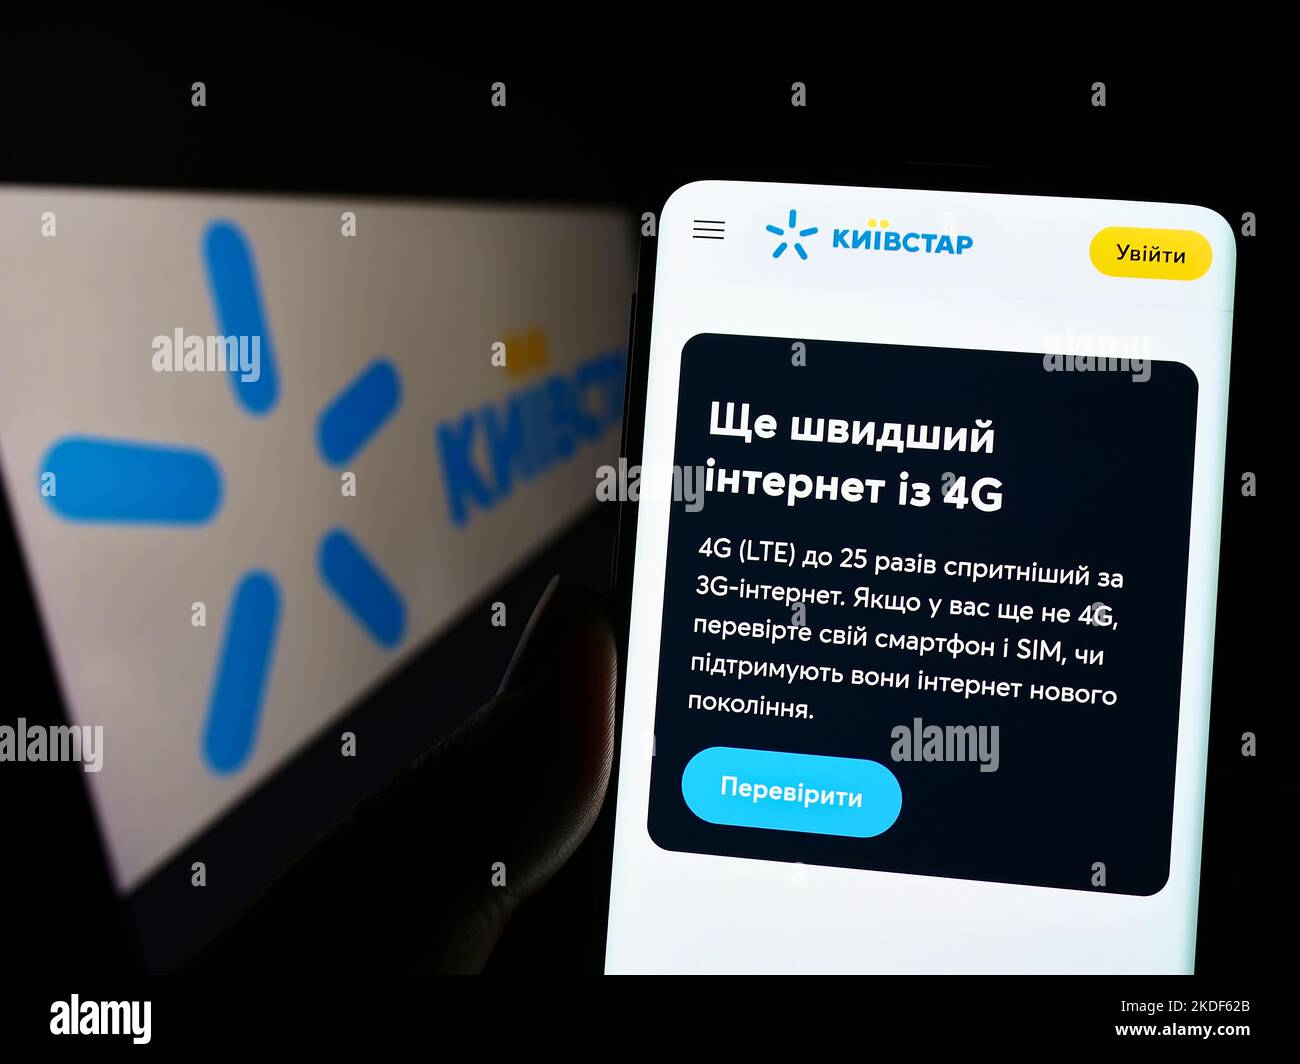 Persona in possesso di cellulare con pagina web della società di telecomunicazioni Kyivstar JSC sullo schermo di fronte al logo. Messa a fuoco al centro del display del telefono. Foto Stock